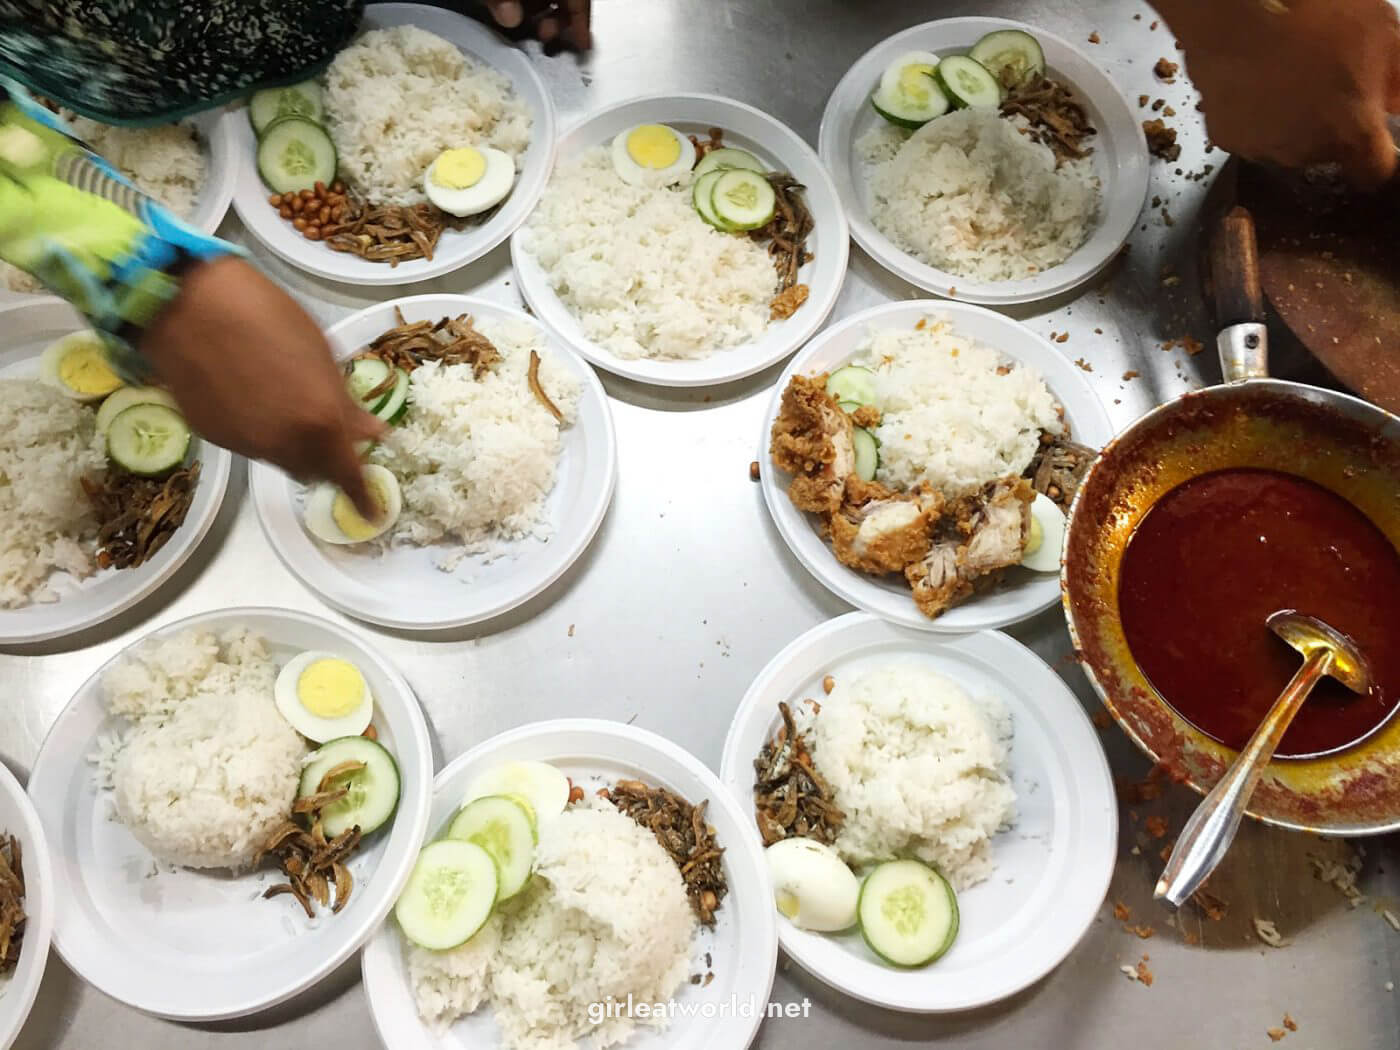 Penang Food Guide - Nasi Lemak Cili Bilis at Gurney Drive